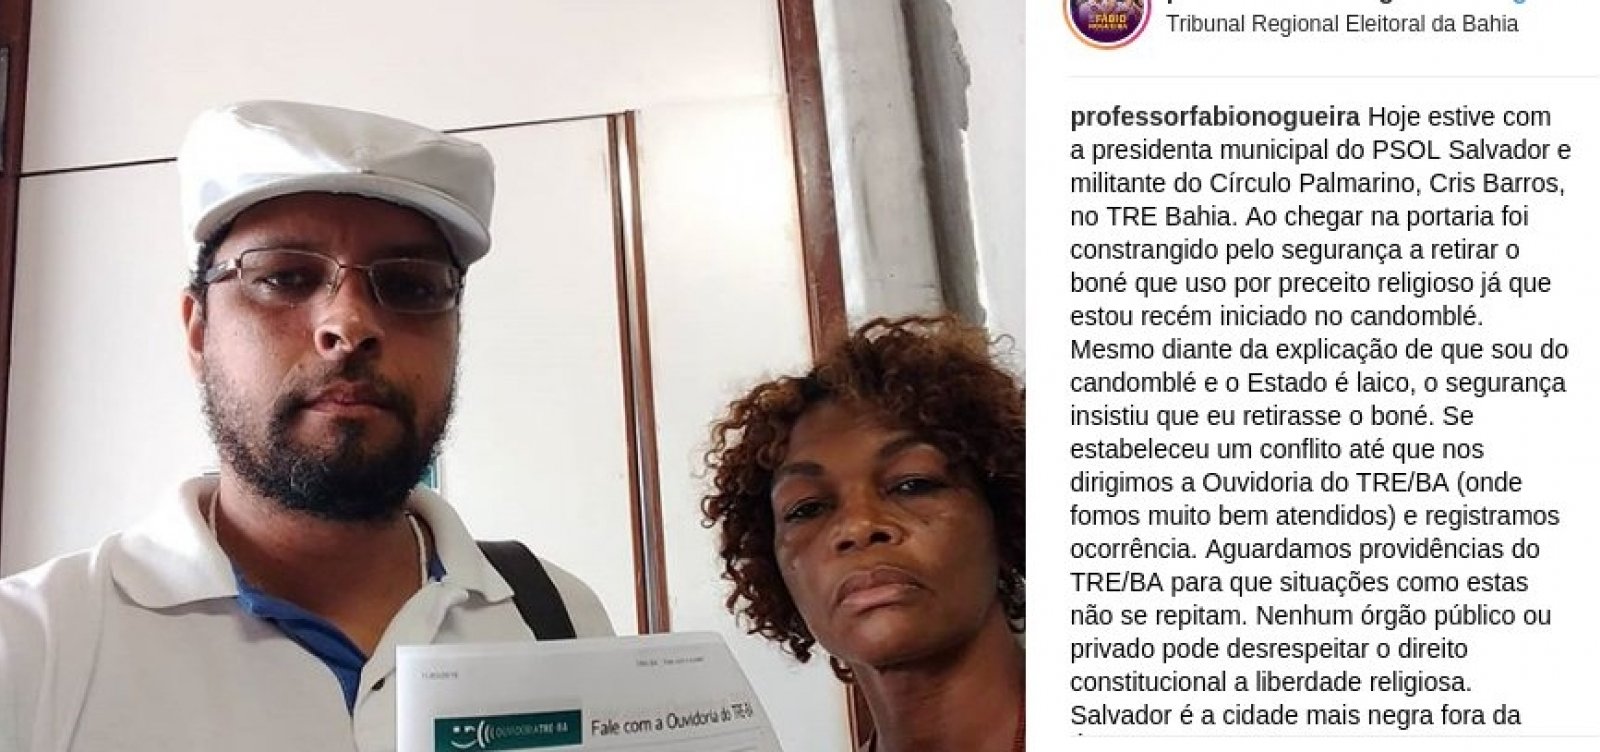 Presidente do PSOL na Bahia é constrangido por segurança no TRE